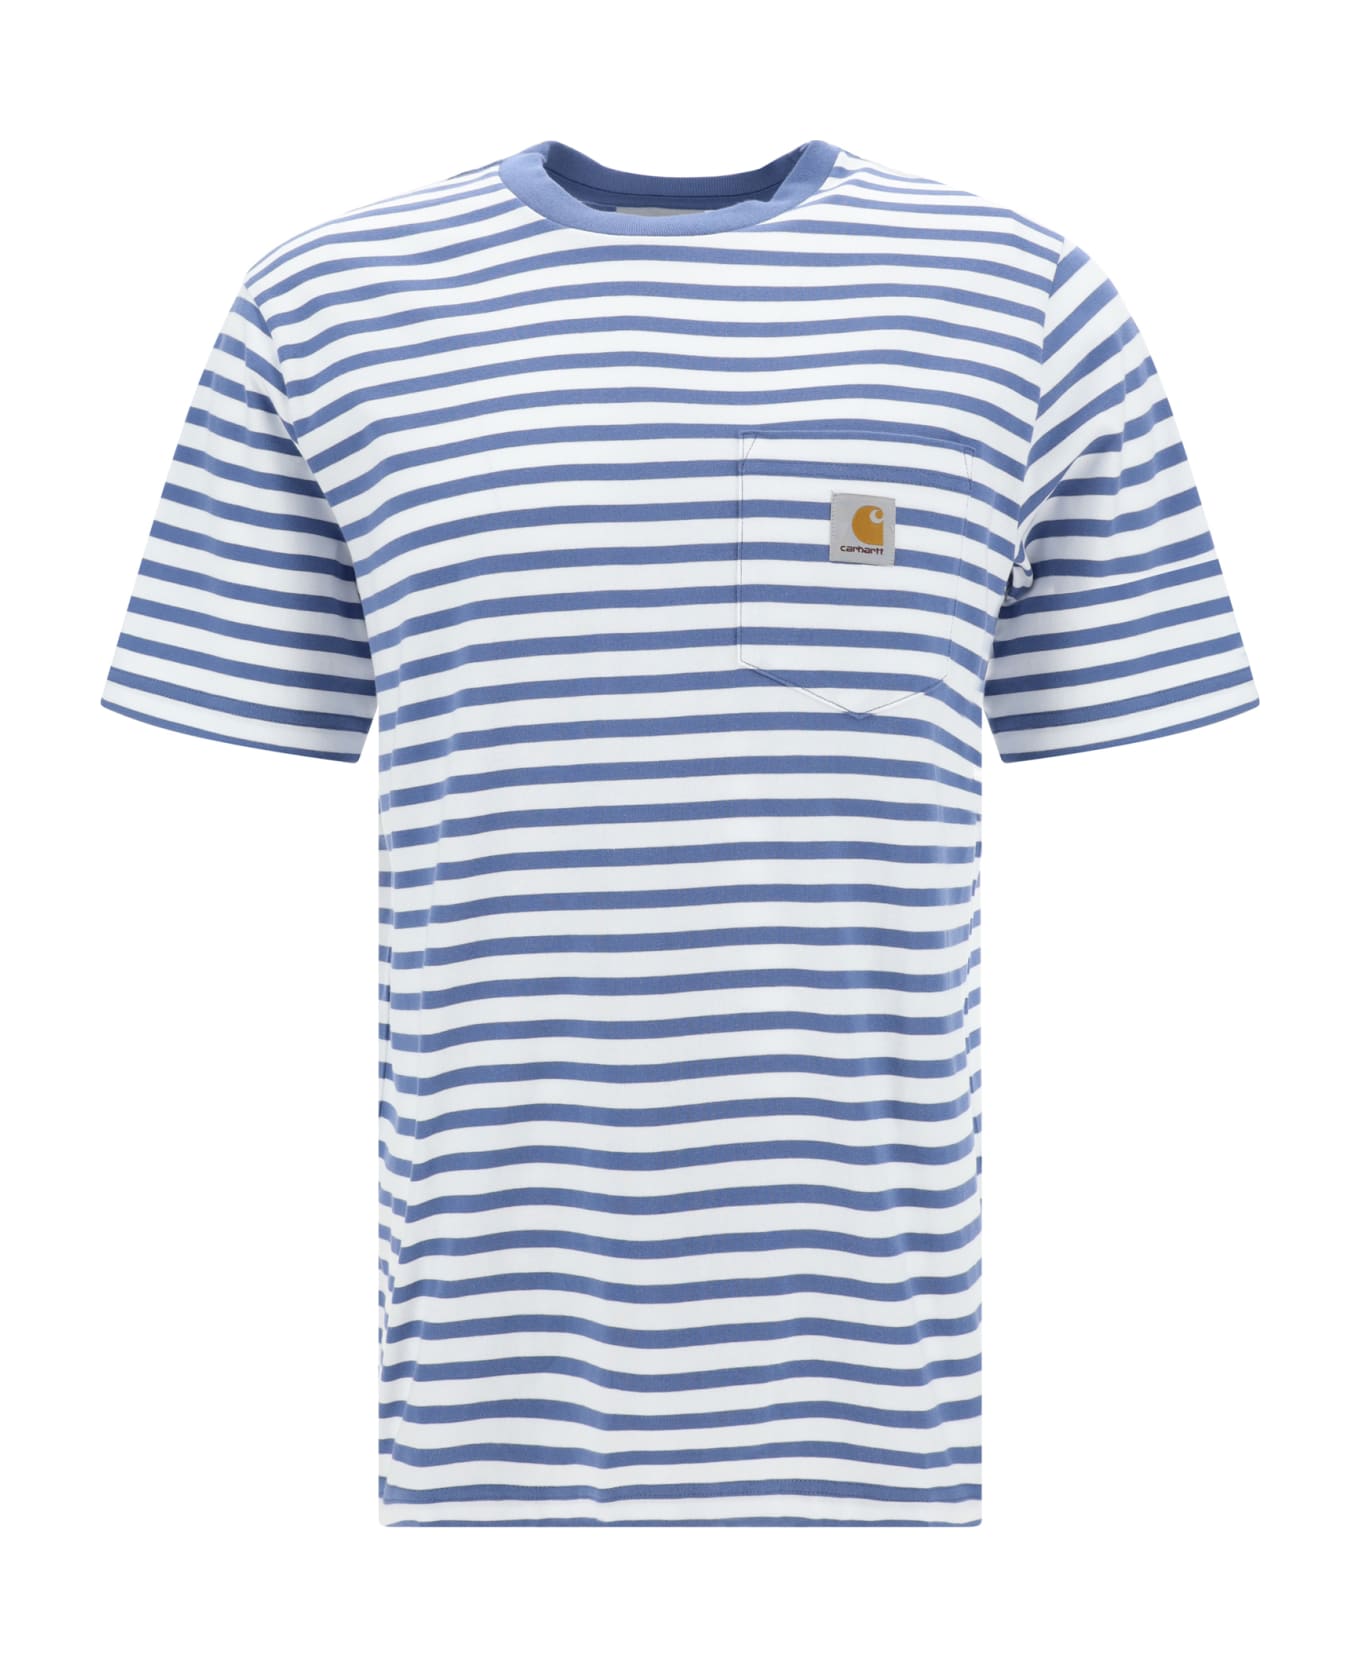 Carhartt T-shirt - Seidler Stripe, Sorrent / White